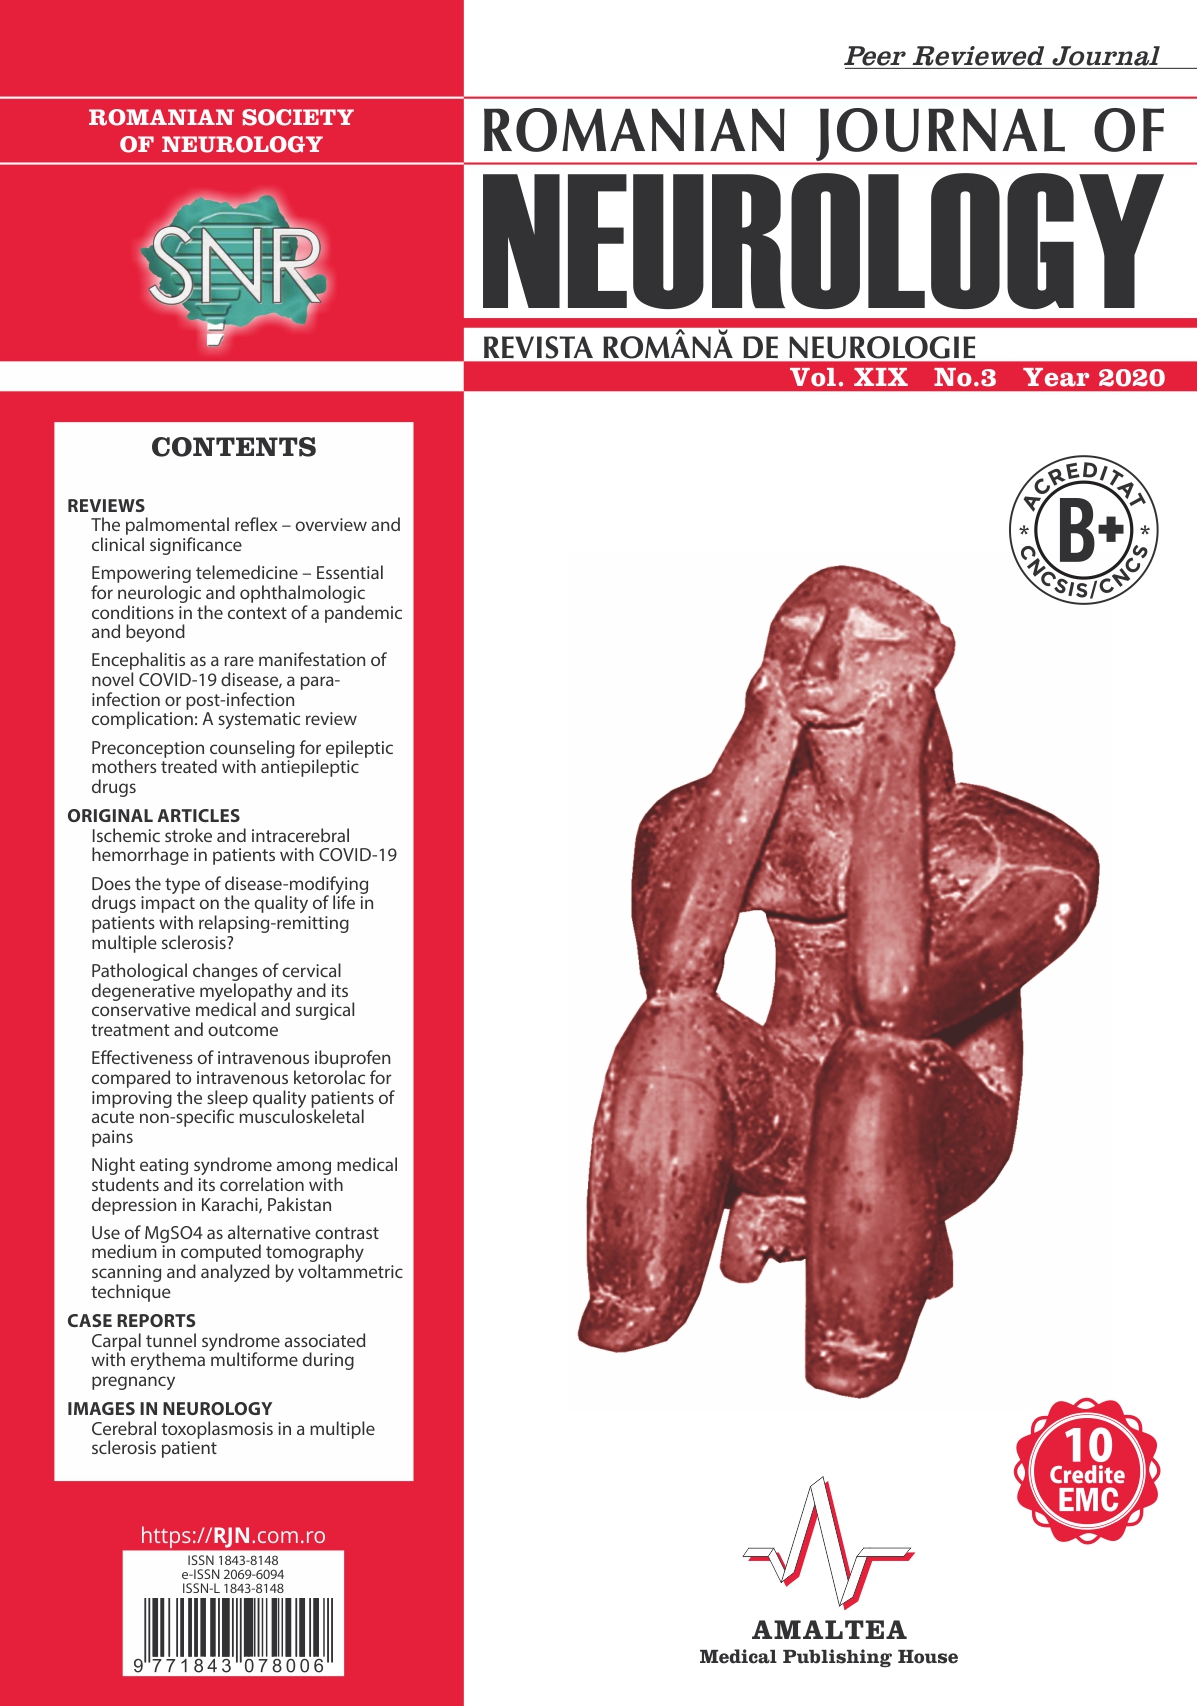 Romanian Journal of Neurology, Volume XIX, No. 3, 2020